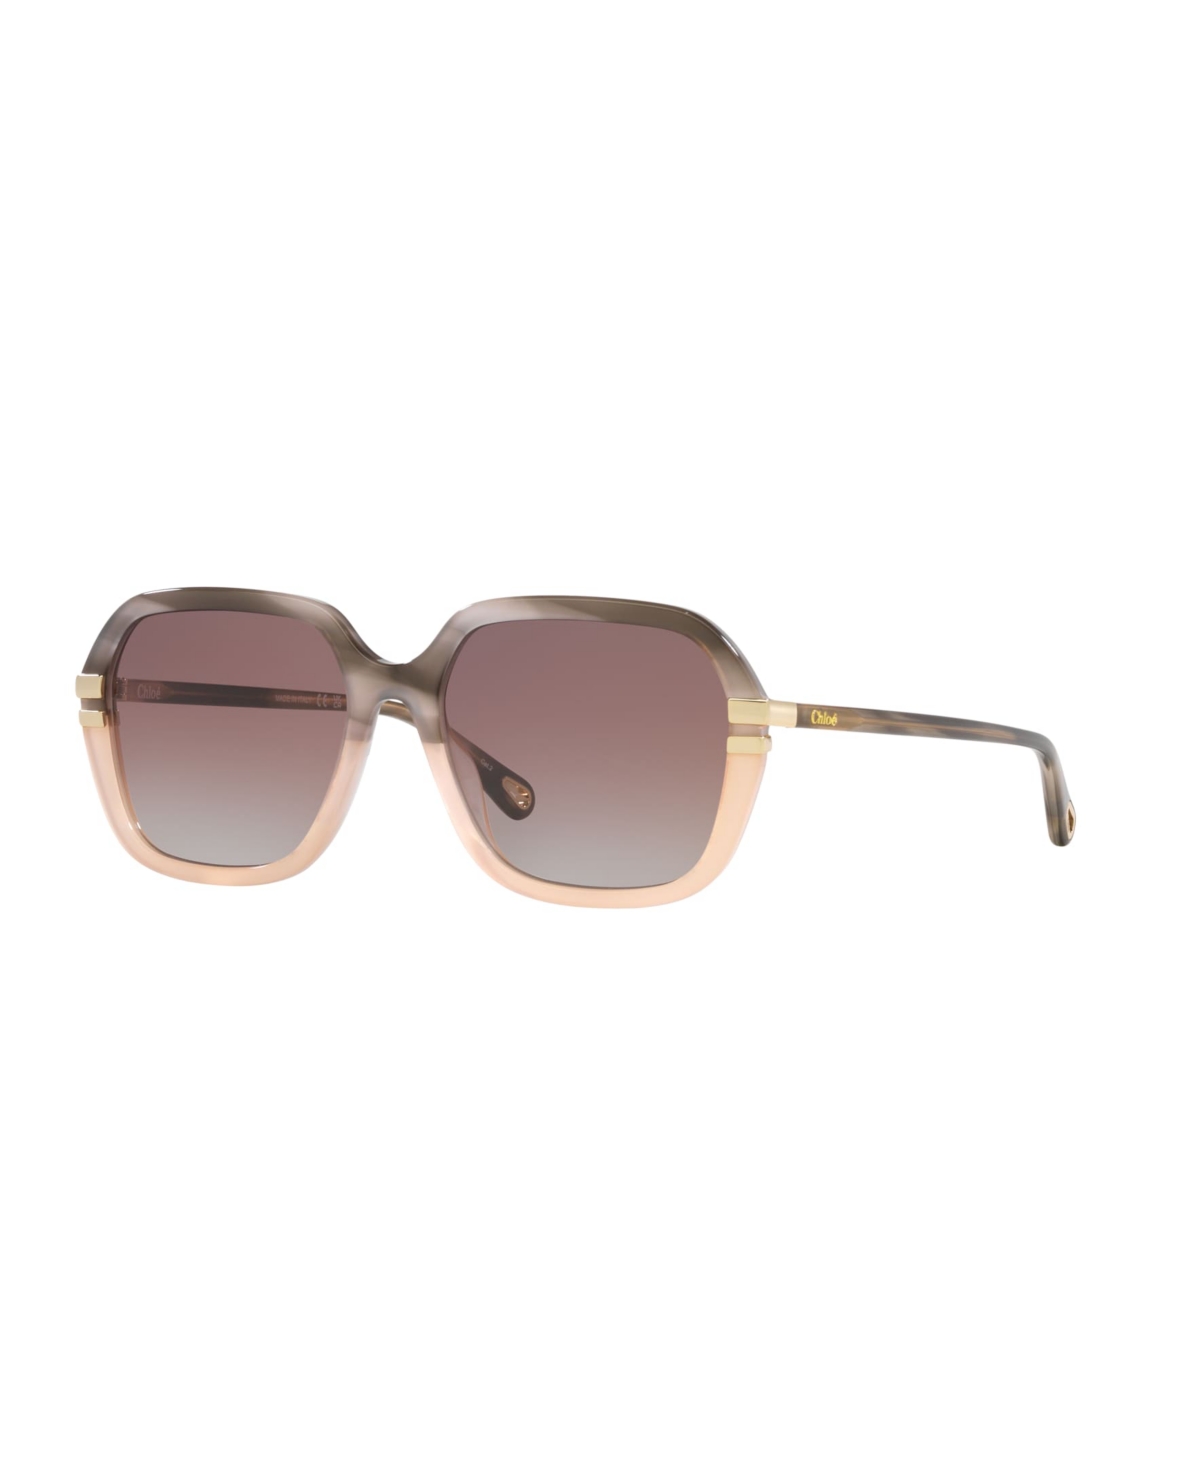 Chloé Women's Sunglasses, Ch0204s In Gray